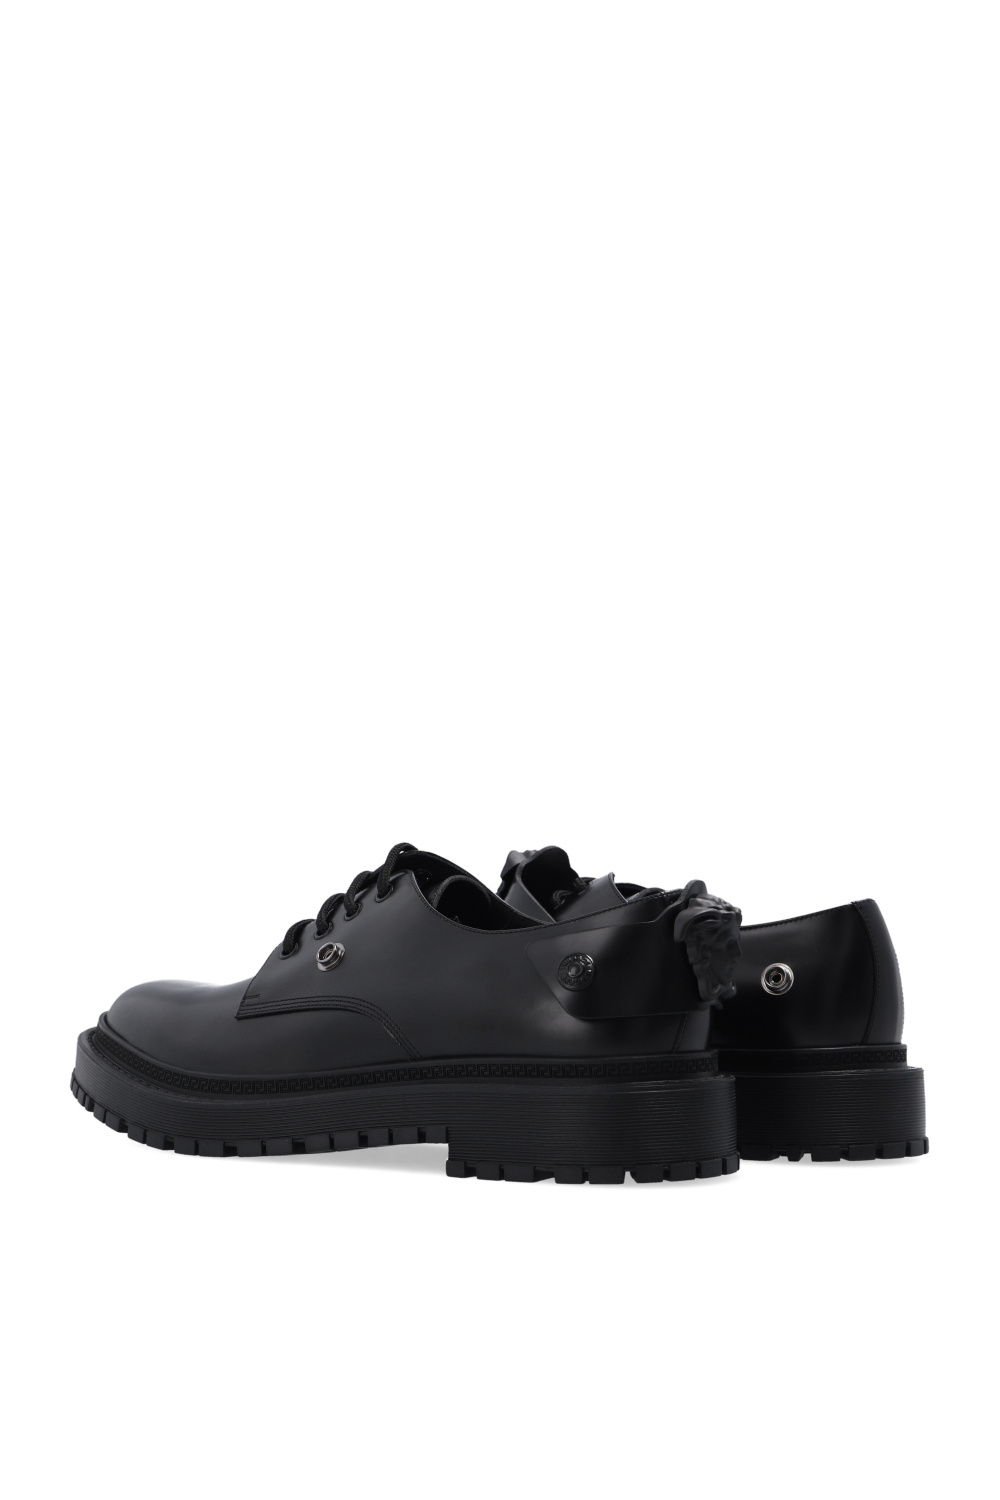 Versace Leather derby shoes | Men's Shoes | Vitkac